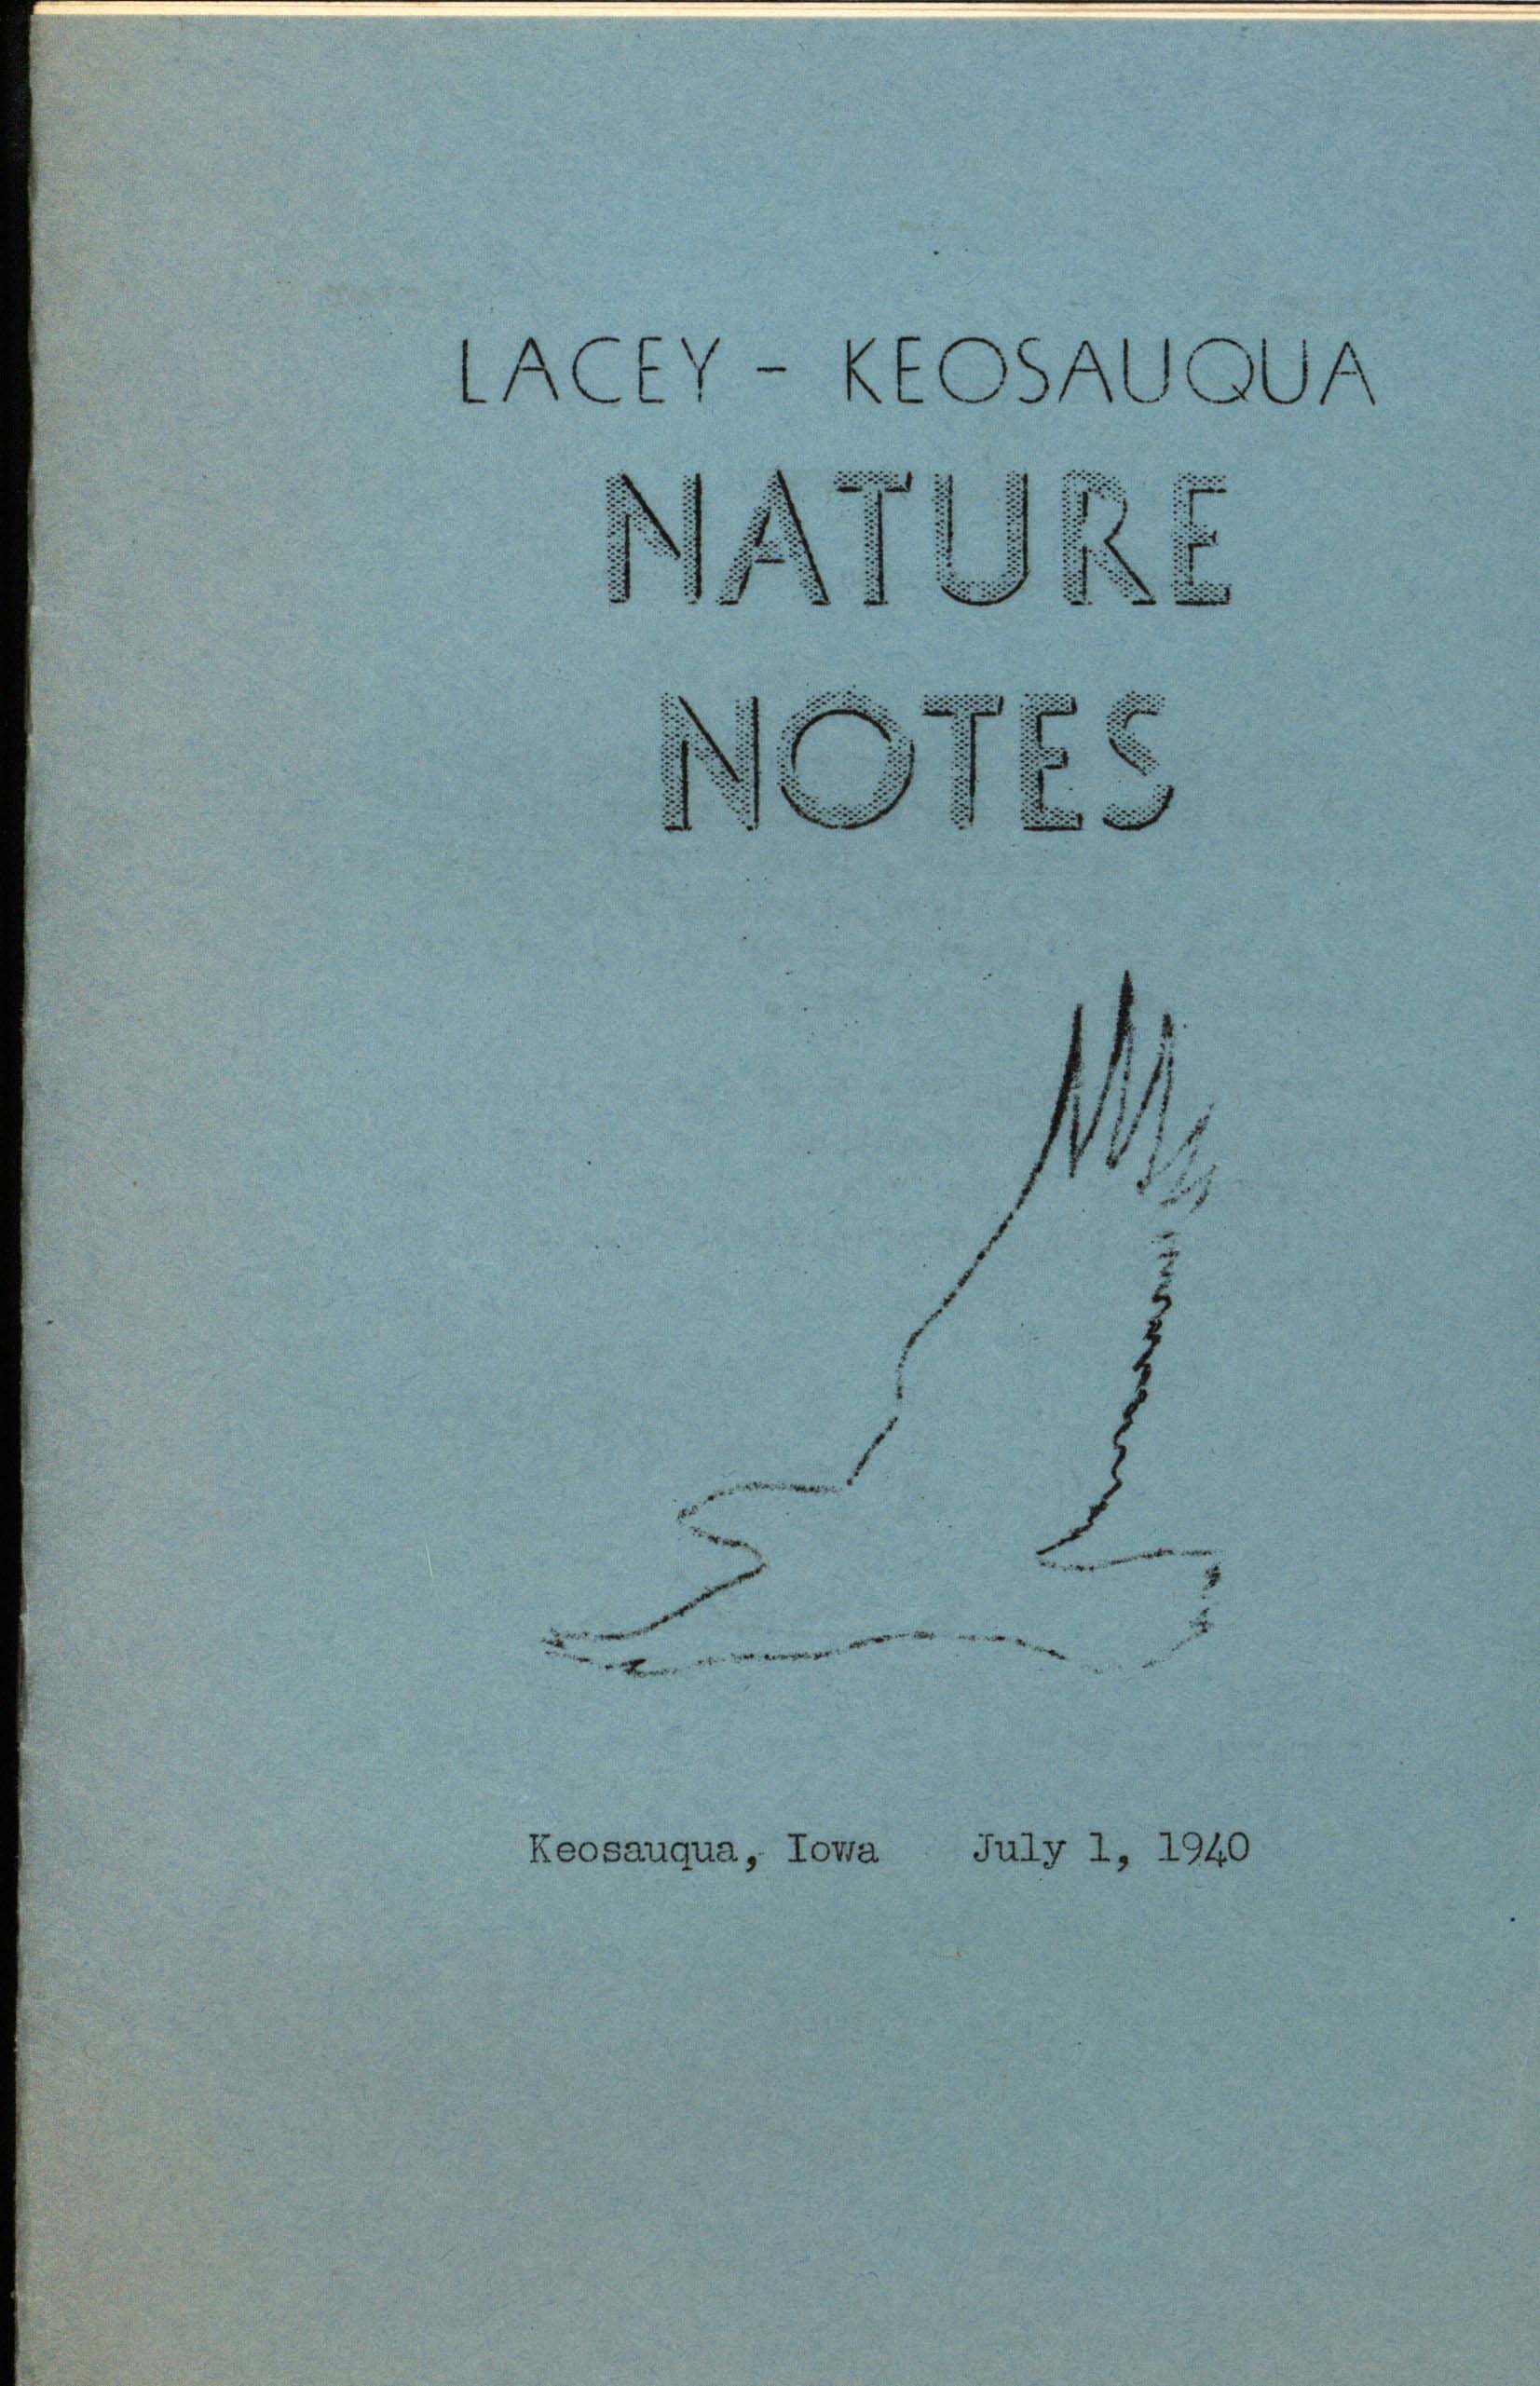 Lacey-Keosauqua Nature Notes